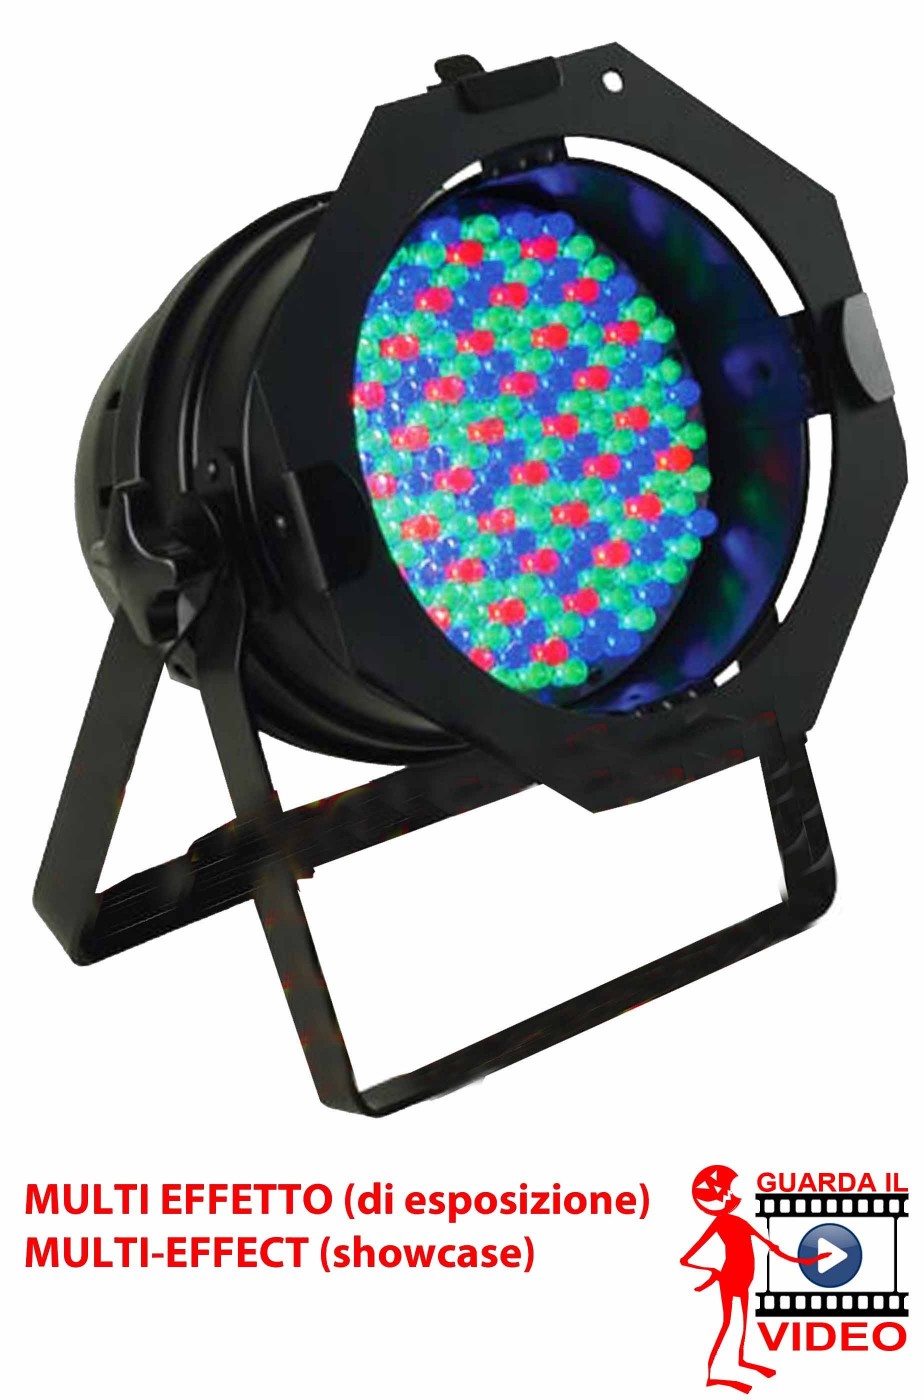 Faro proiettore LED multicolore professionale offerta di esposizione con effetti